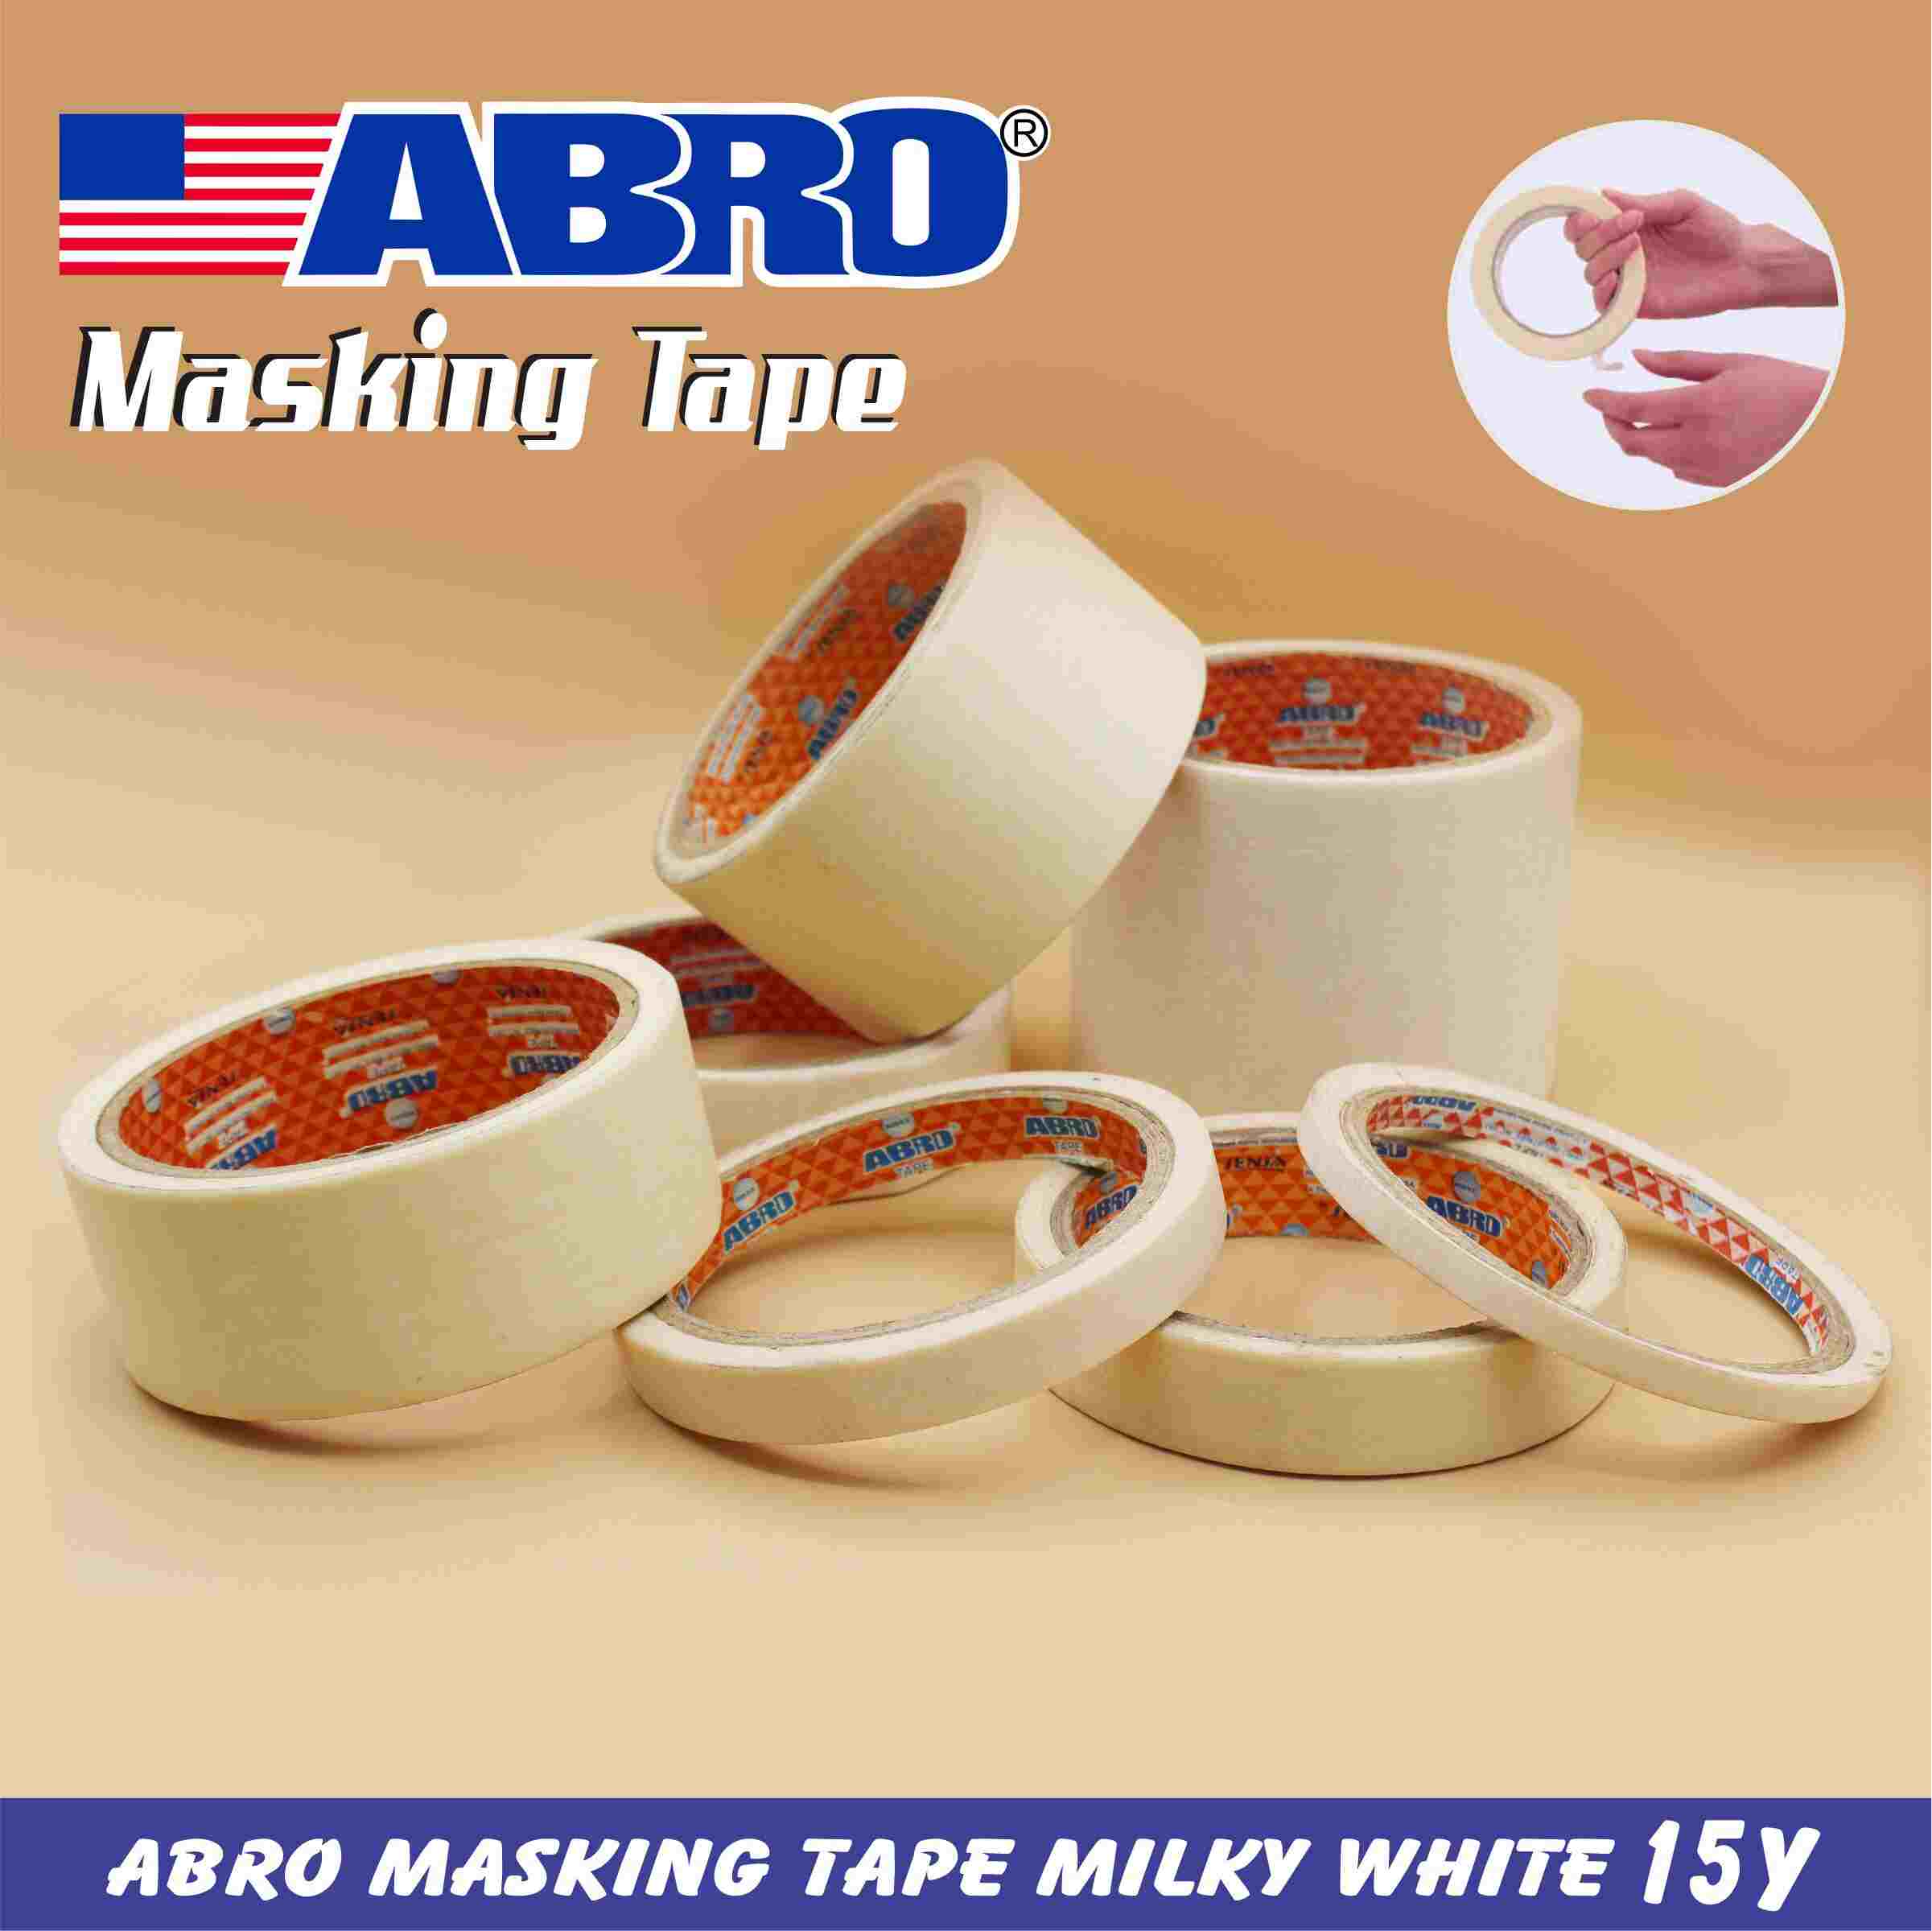 Abro Masking Tape Milky White 15y